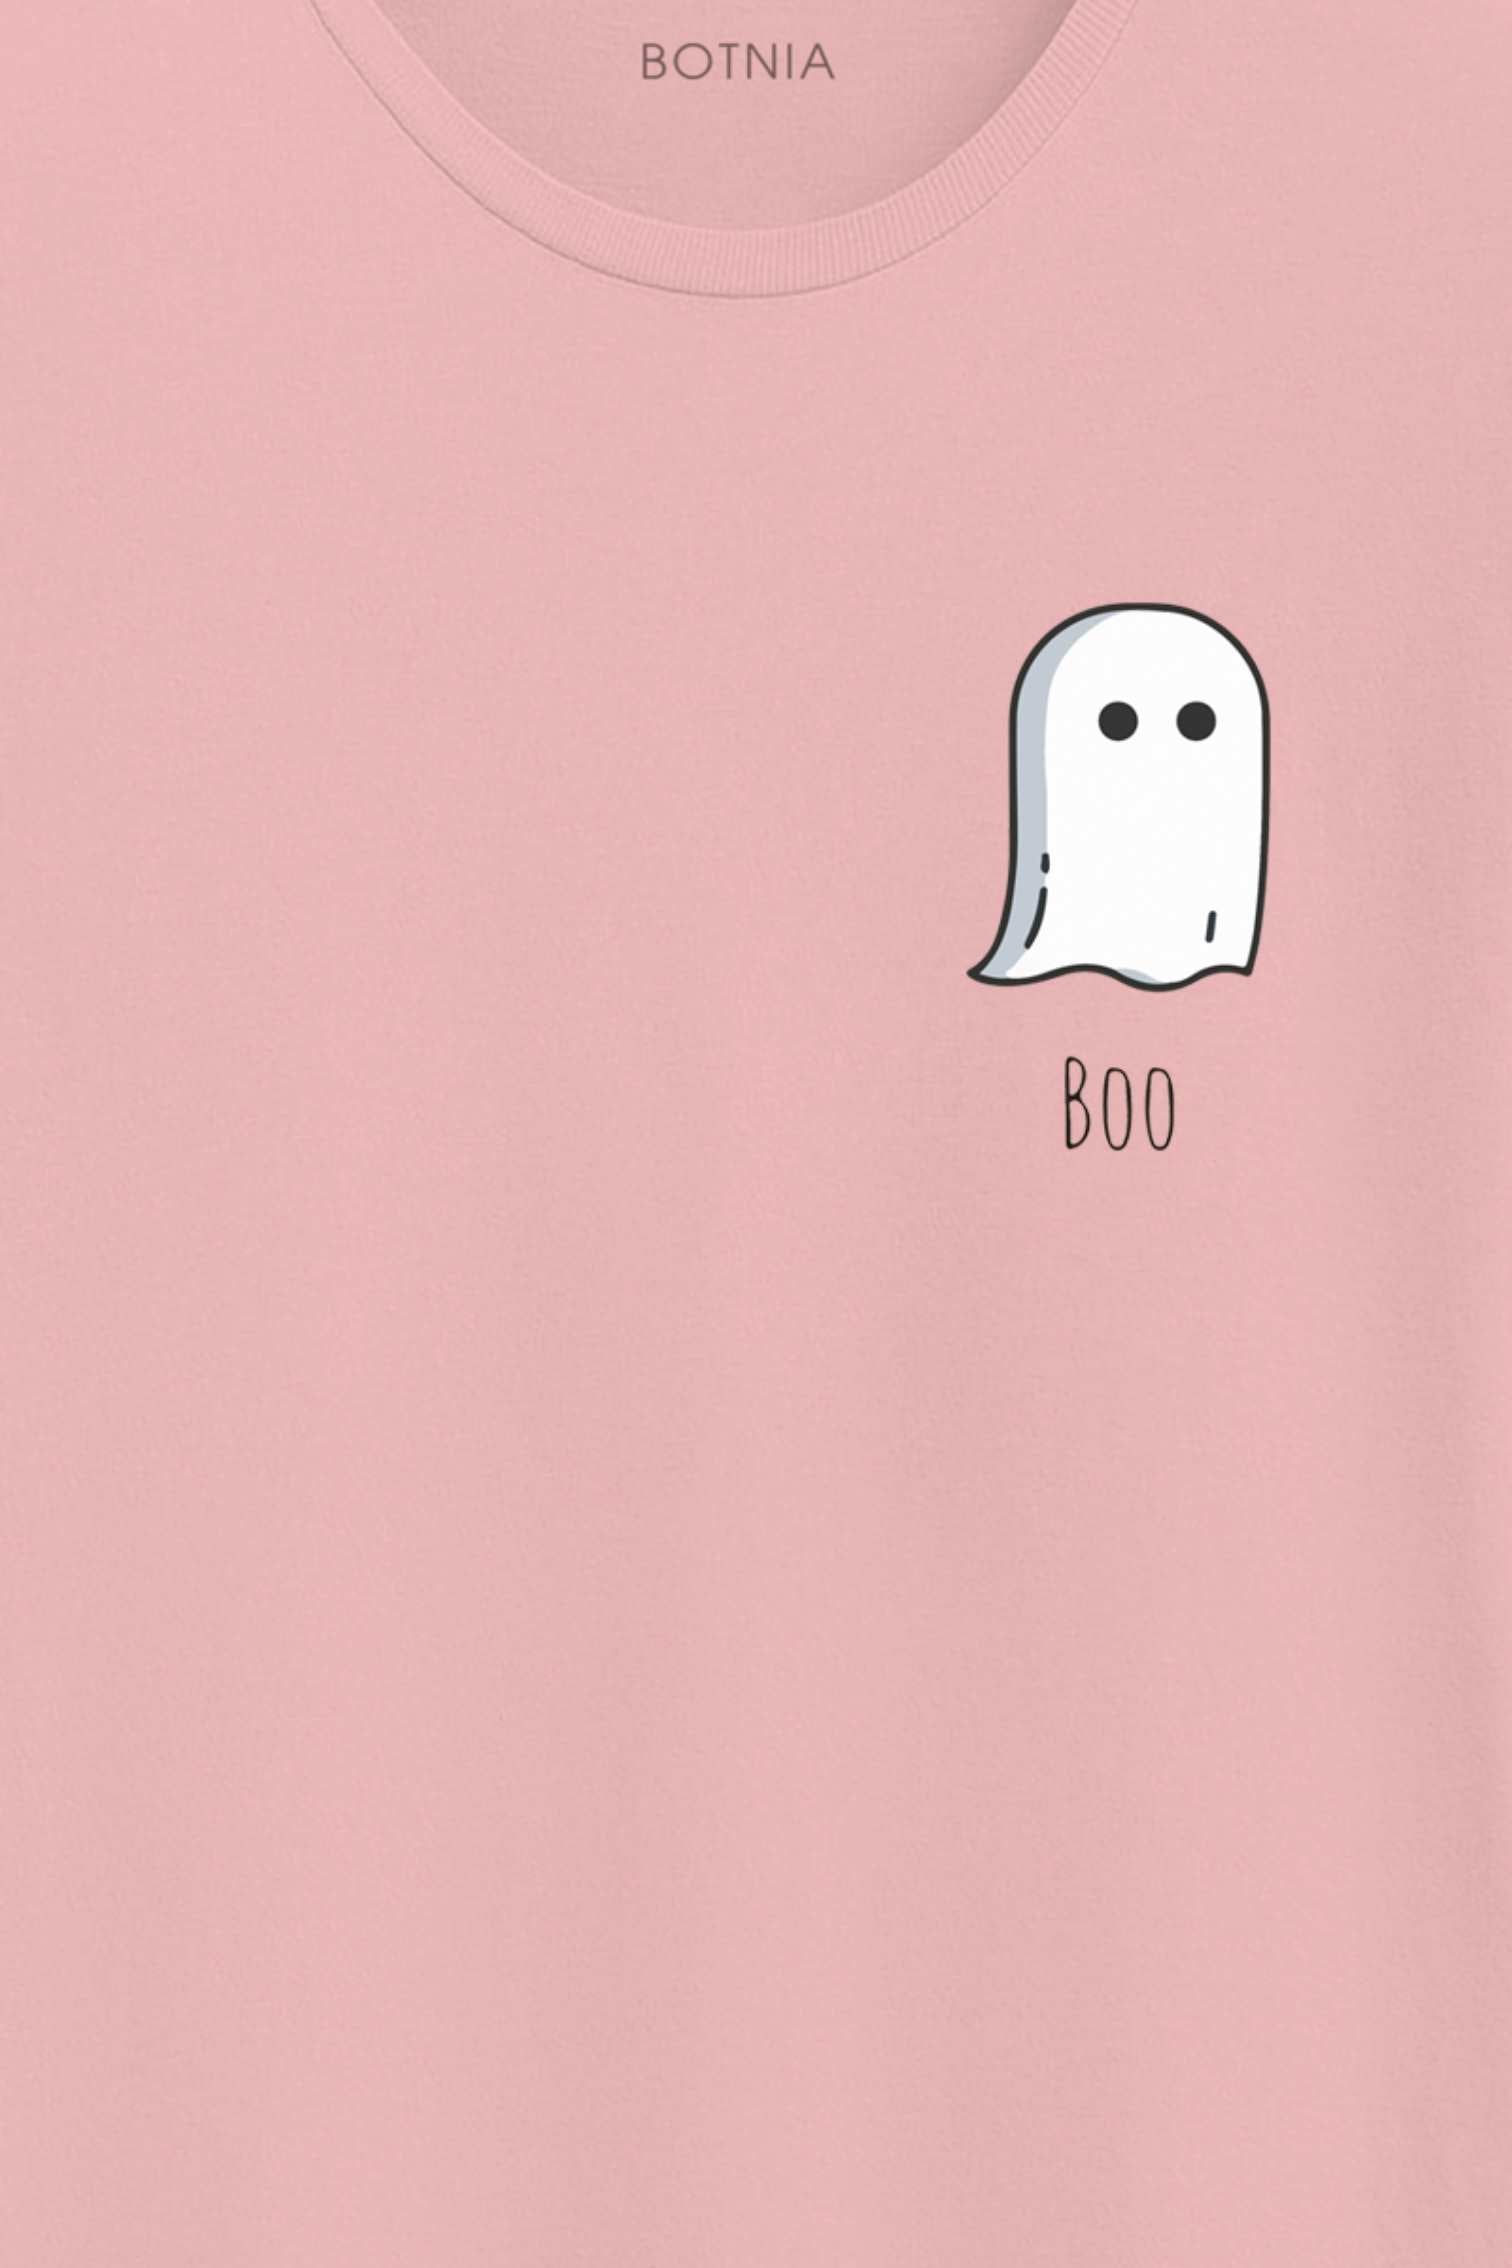 Boo- Half sleeve t-shirt